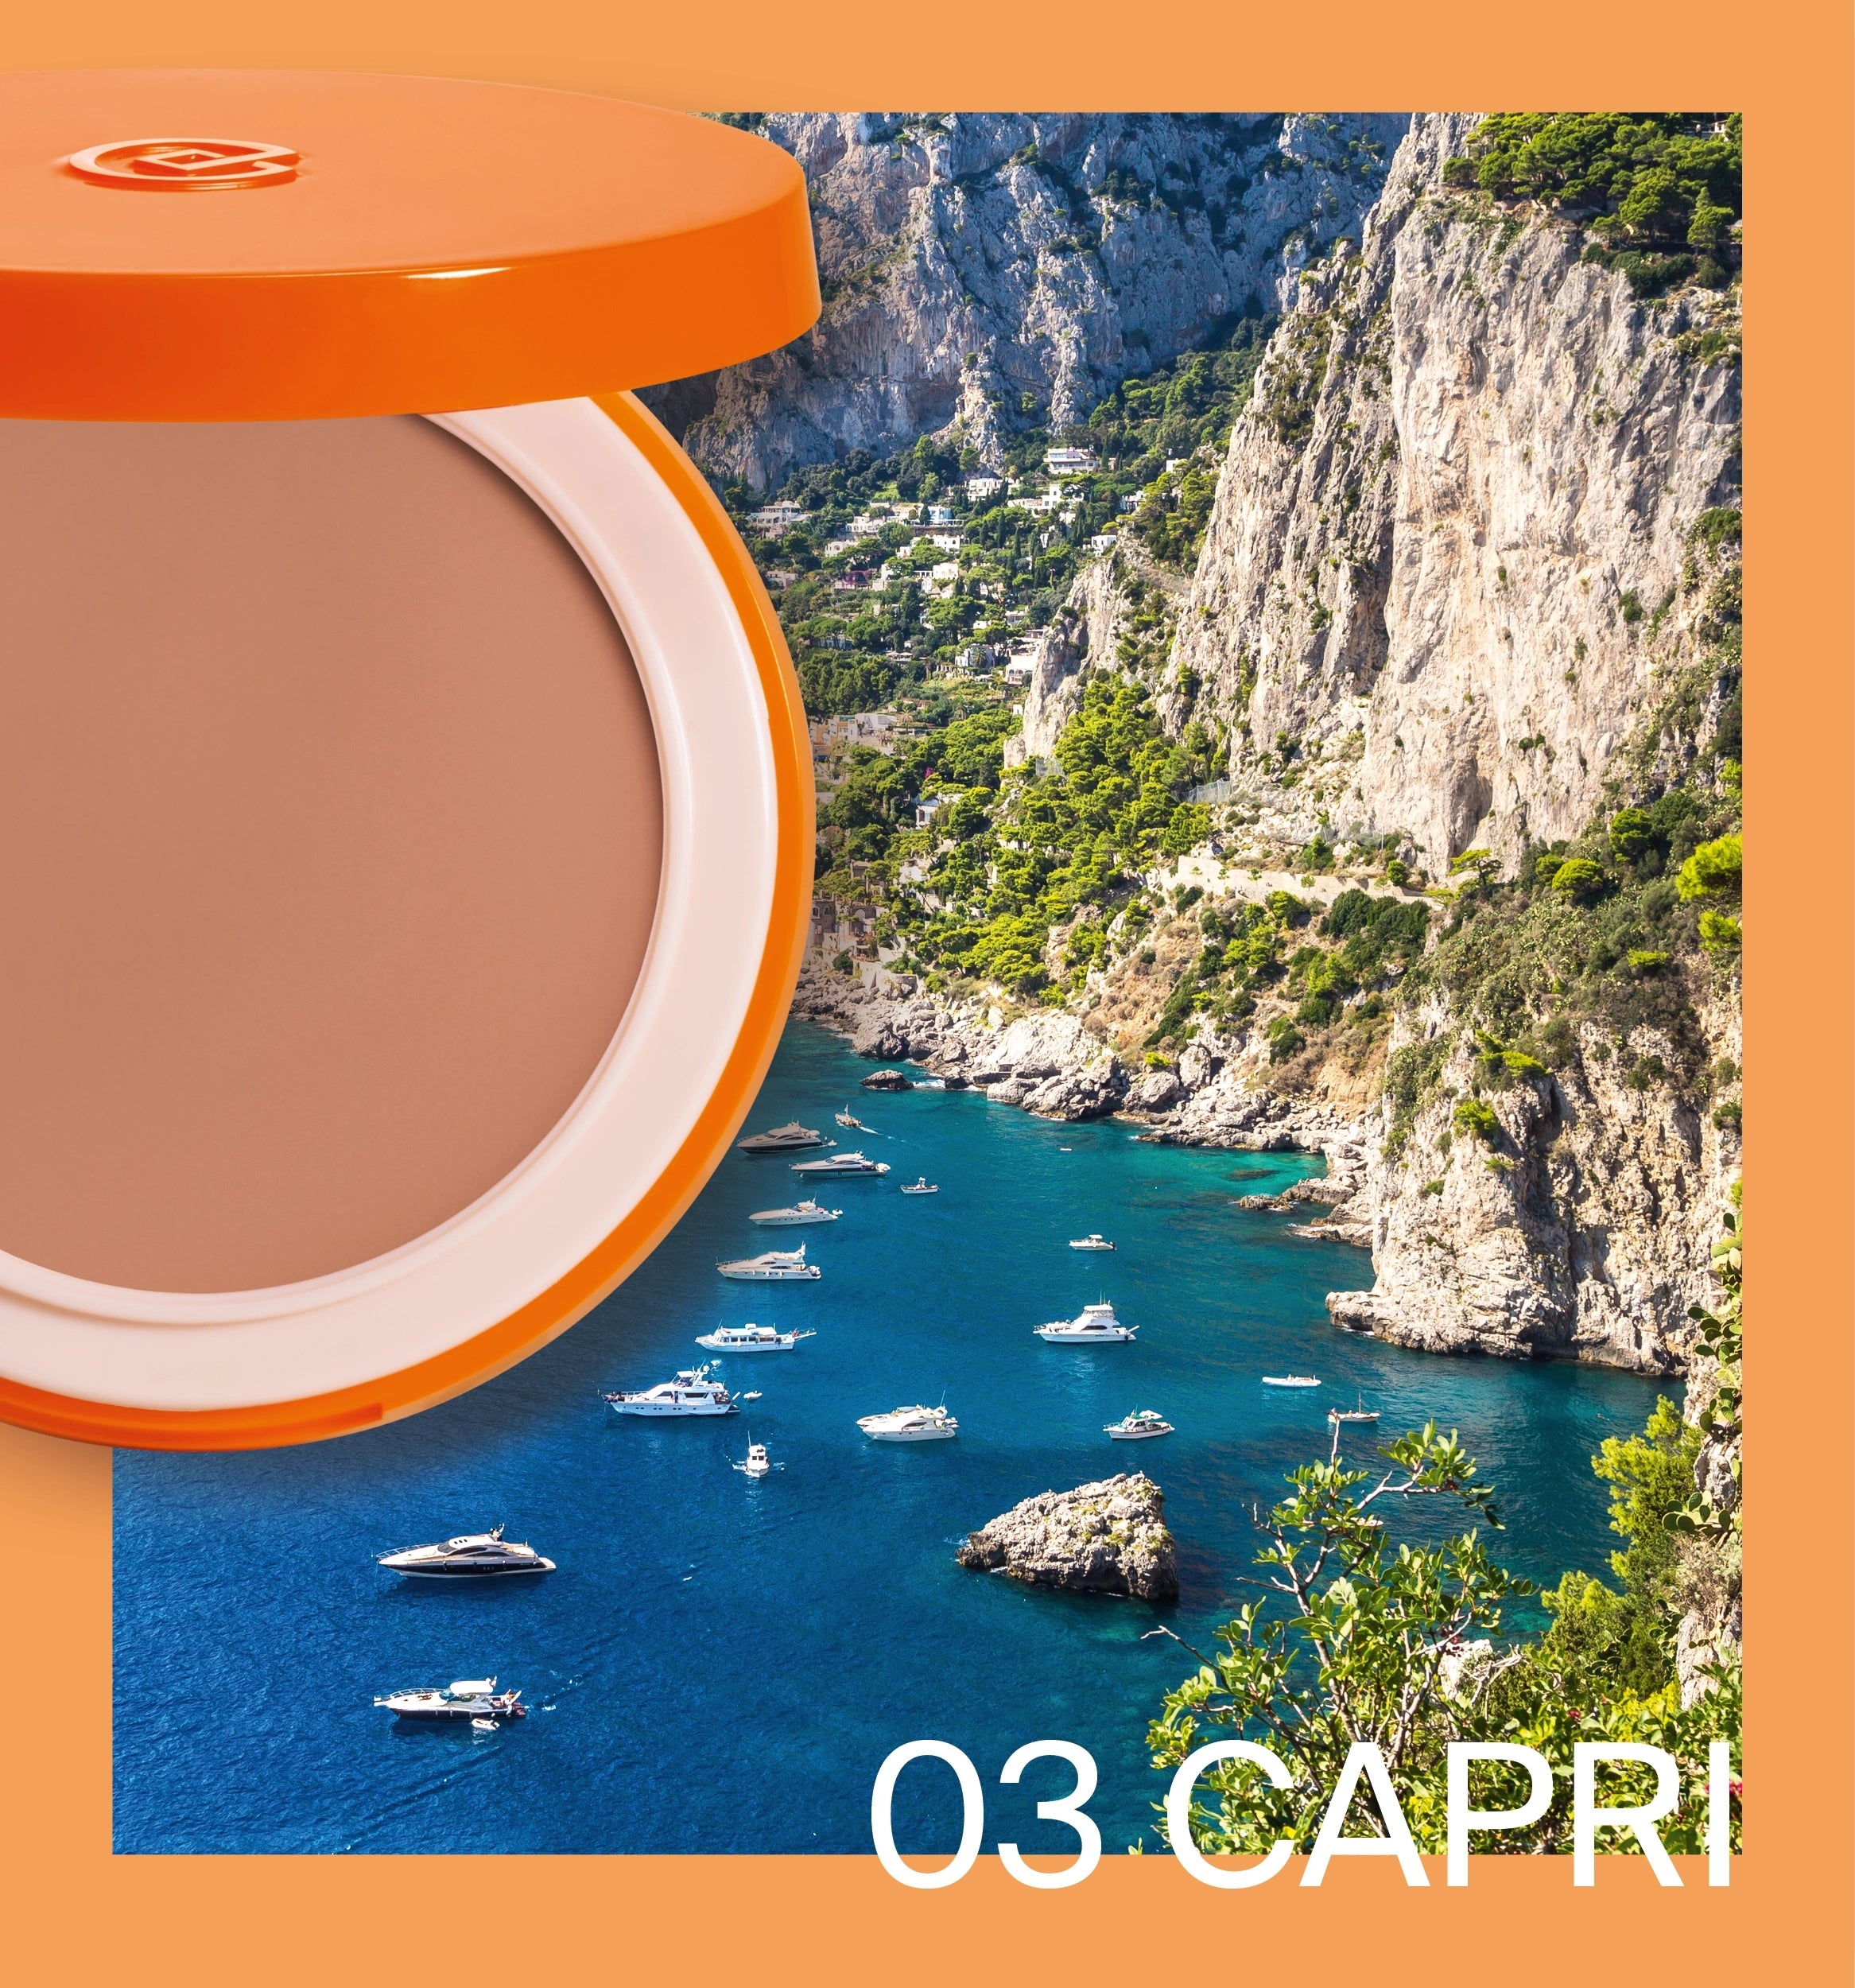 Collistar MEDITERRANEA Fondotinta Compatto Solare SPF 15 - REFILL 03 Capri